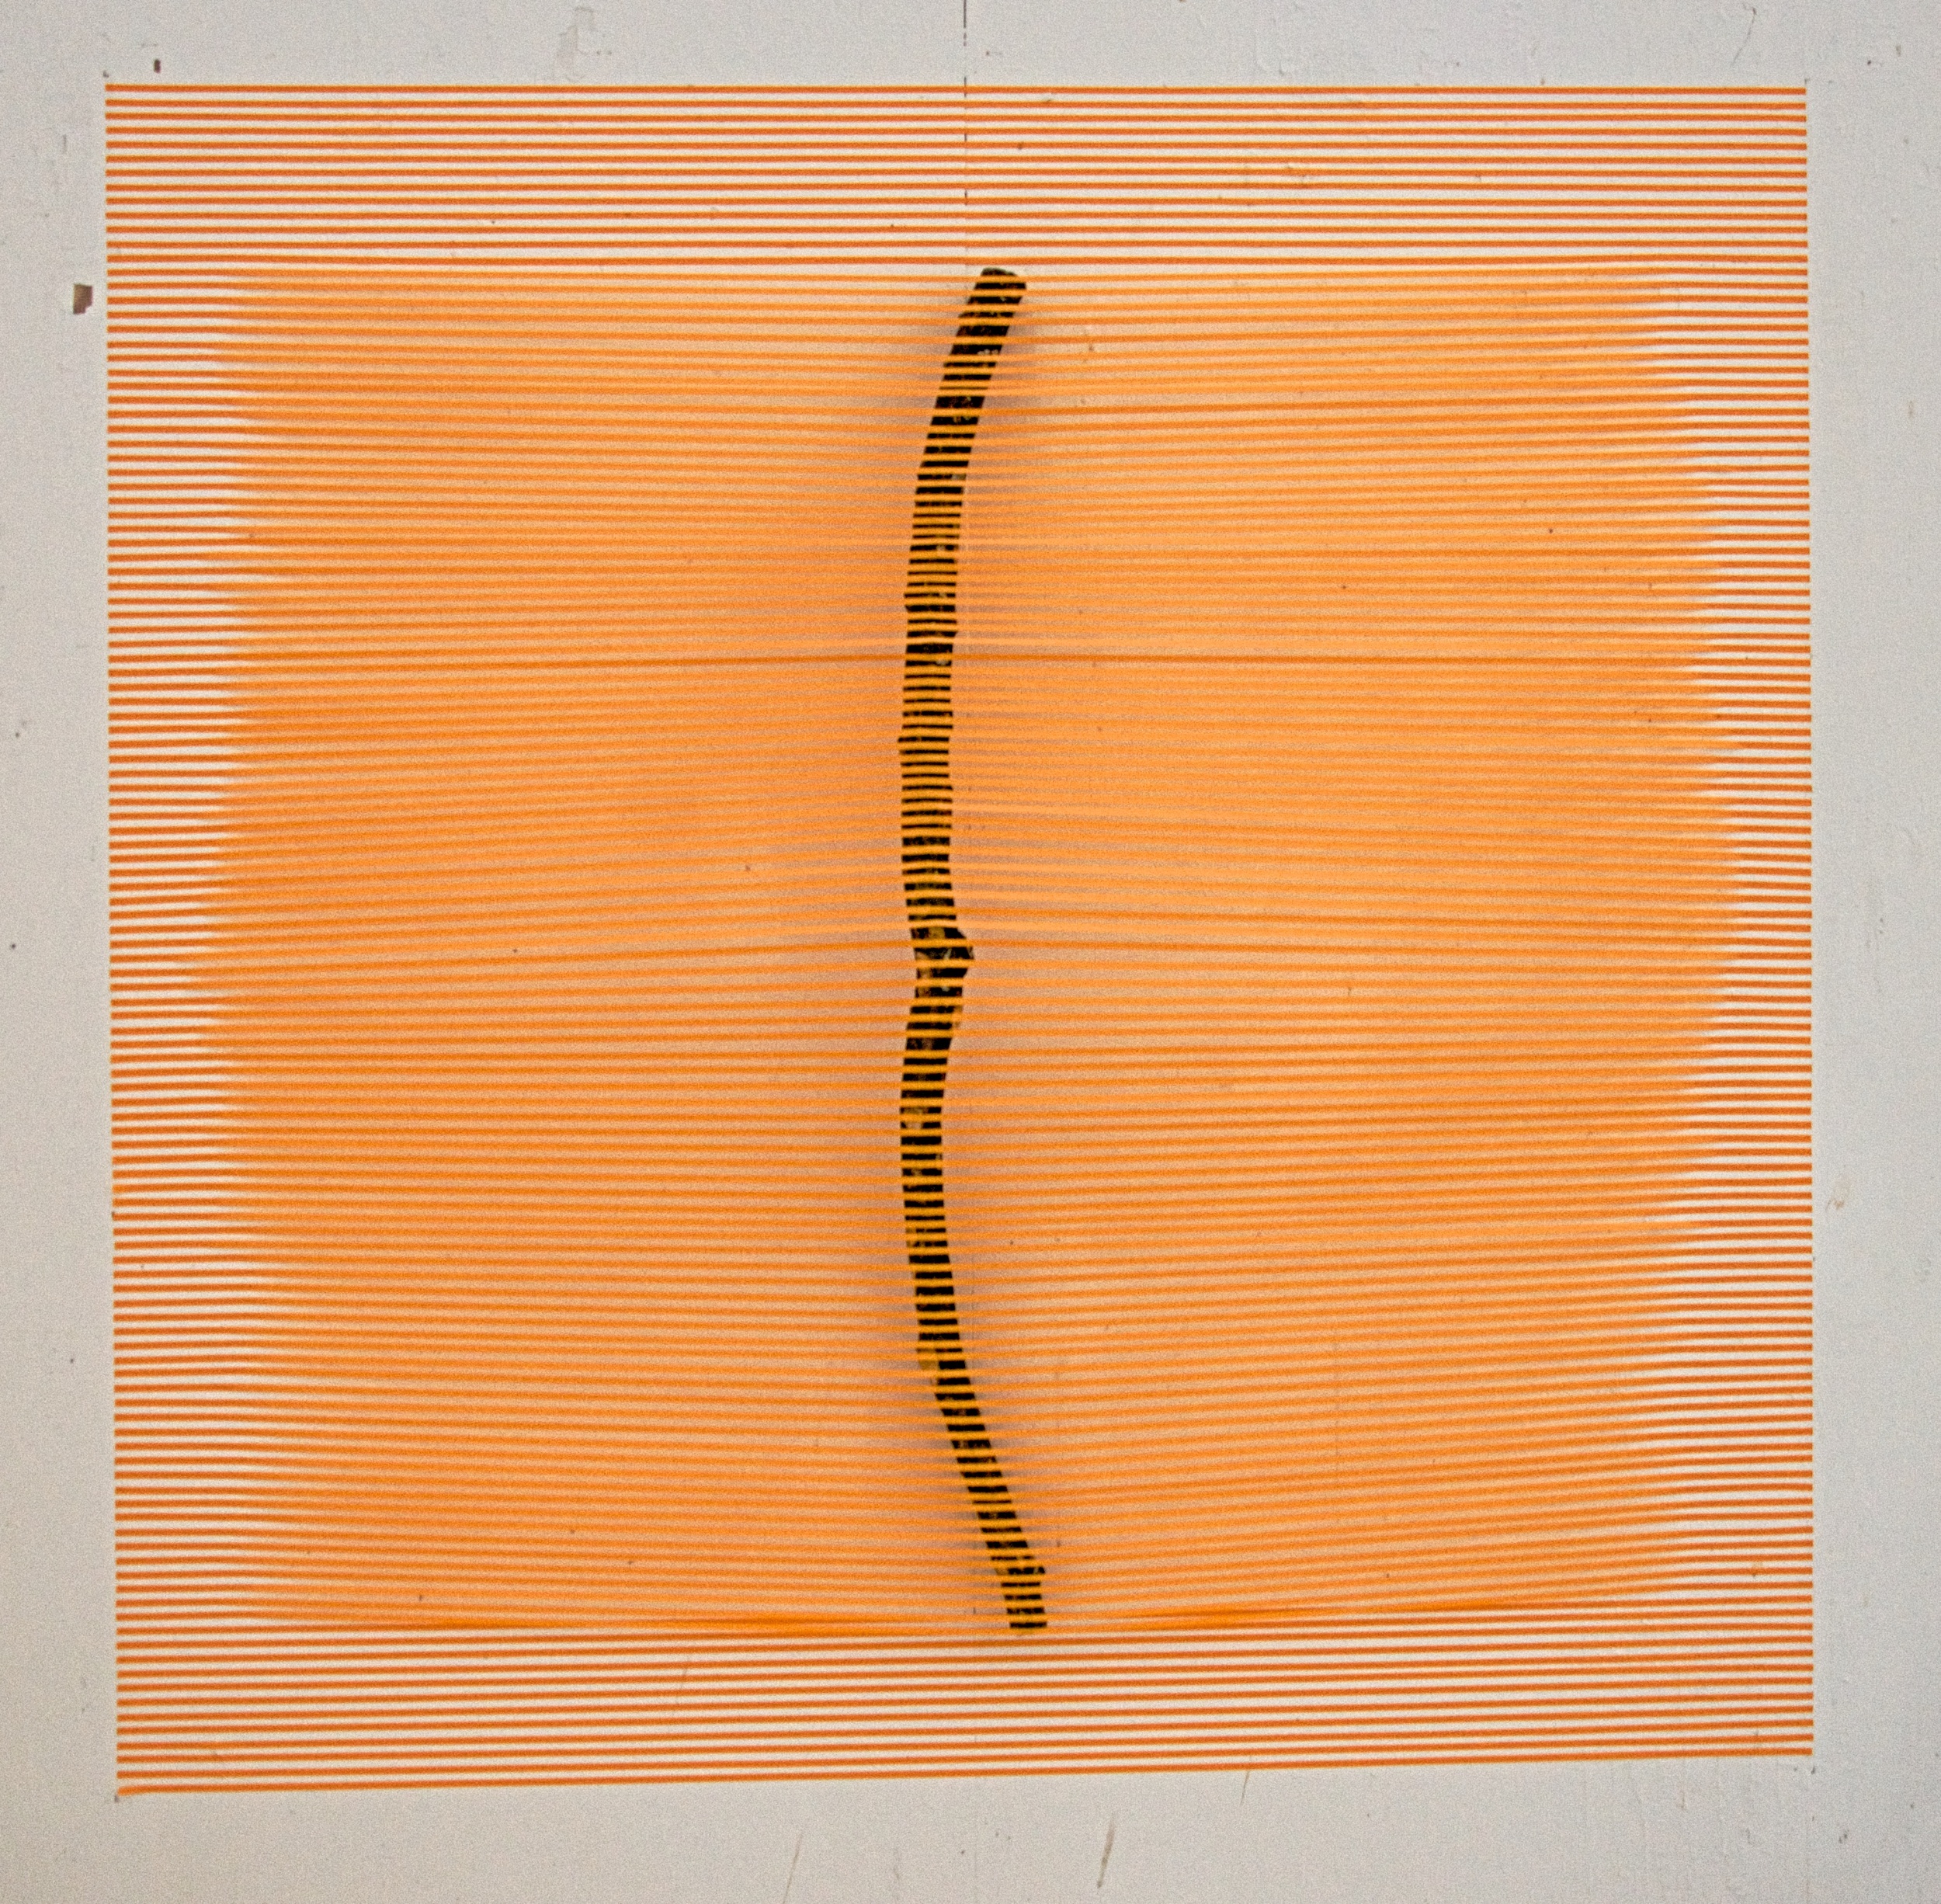   Orange Stick   2015  paper tape and stick  60" x 60" 